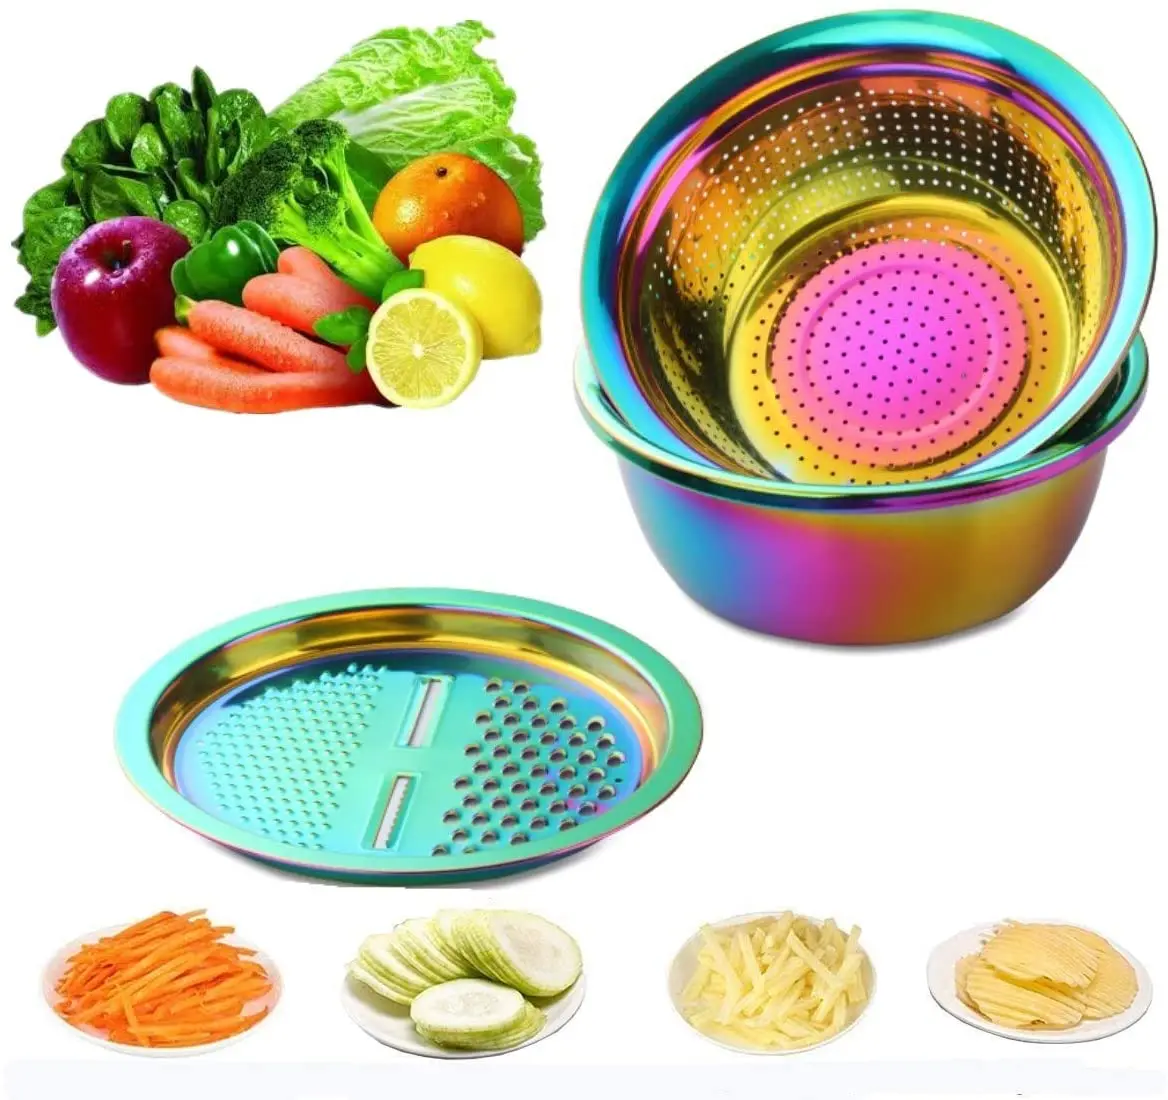 3PCS/Set Stainless Steel Gold Vegetable Slicer Potato Peeler Round Bowl Strainer Basket Set Kitchen Utensils Carrot Onion Grater